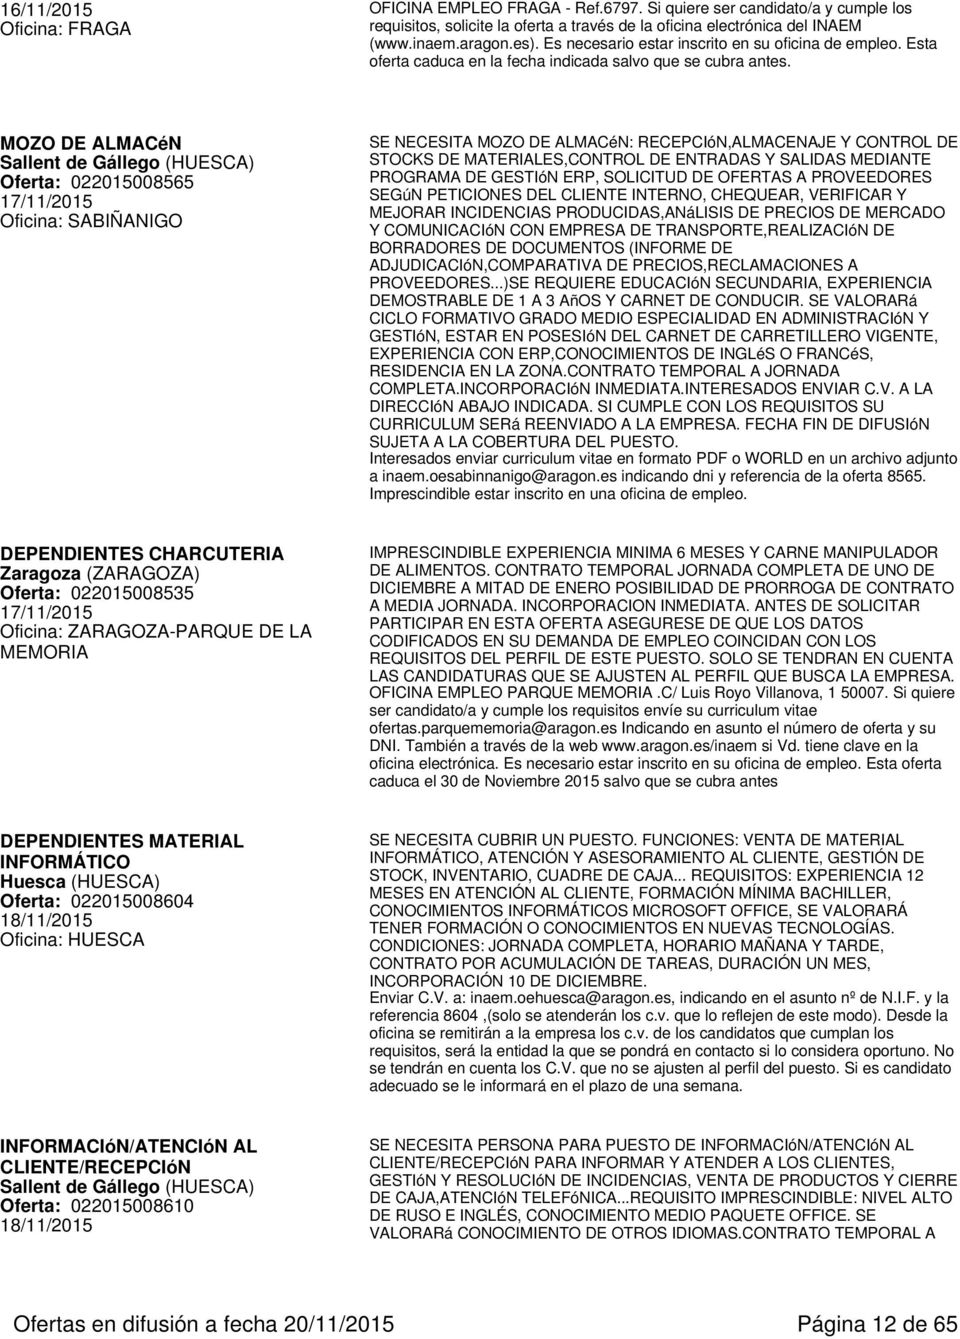 MOZO DE ALMACéN Sallent de Gállego (HUESCA) Oferta: 022015008565 17/11/2015 Oficina: SABIÑANIGO SE NECESITA MOZO DE ALMACéN: RECEPCIóN,ALMACENAJE Y CONTROL DE STOCKS DE MATERIALES,CONTROL DE ENTRADAS